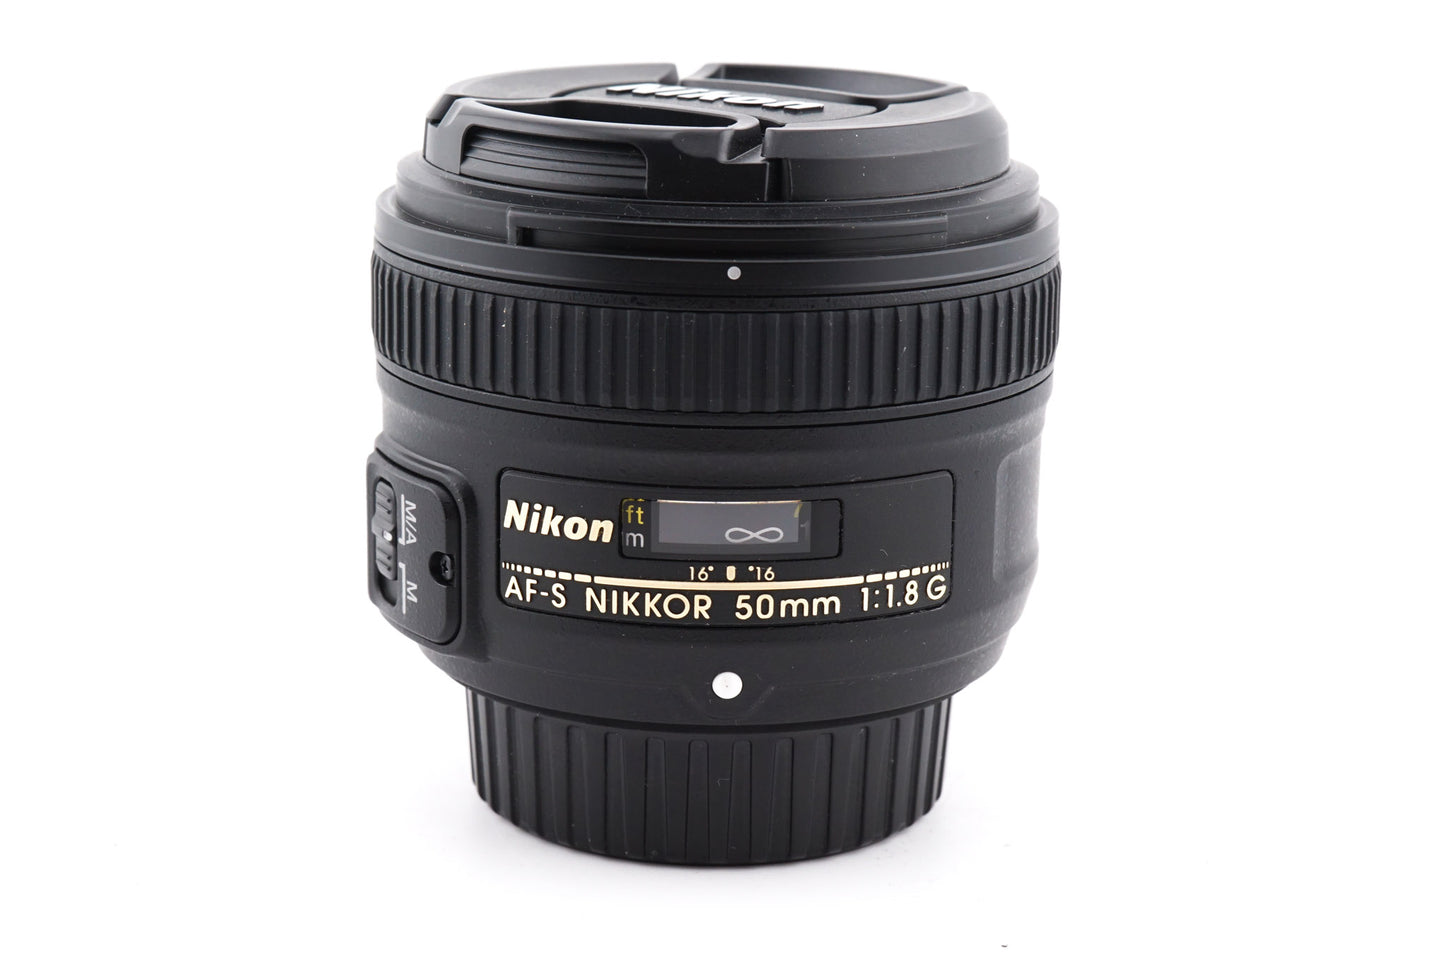 Nikon 50mm f1.8 AF-S Nikkor G - Lens